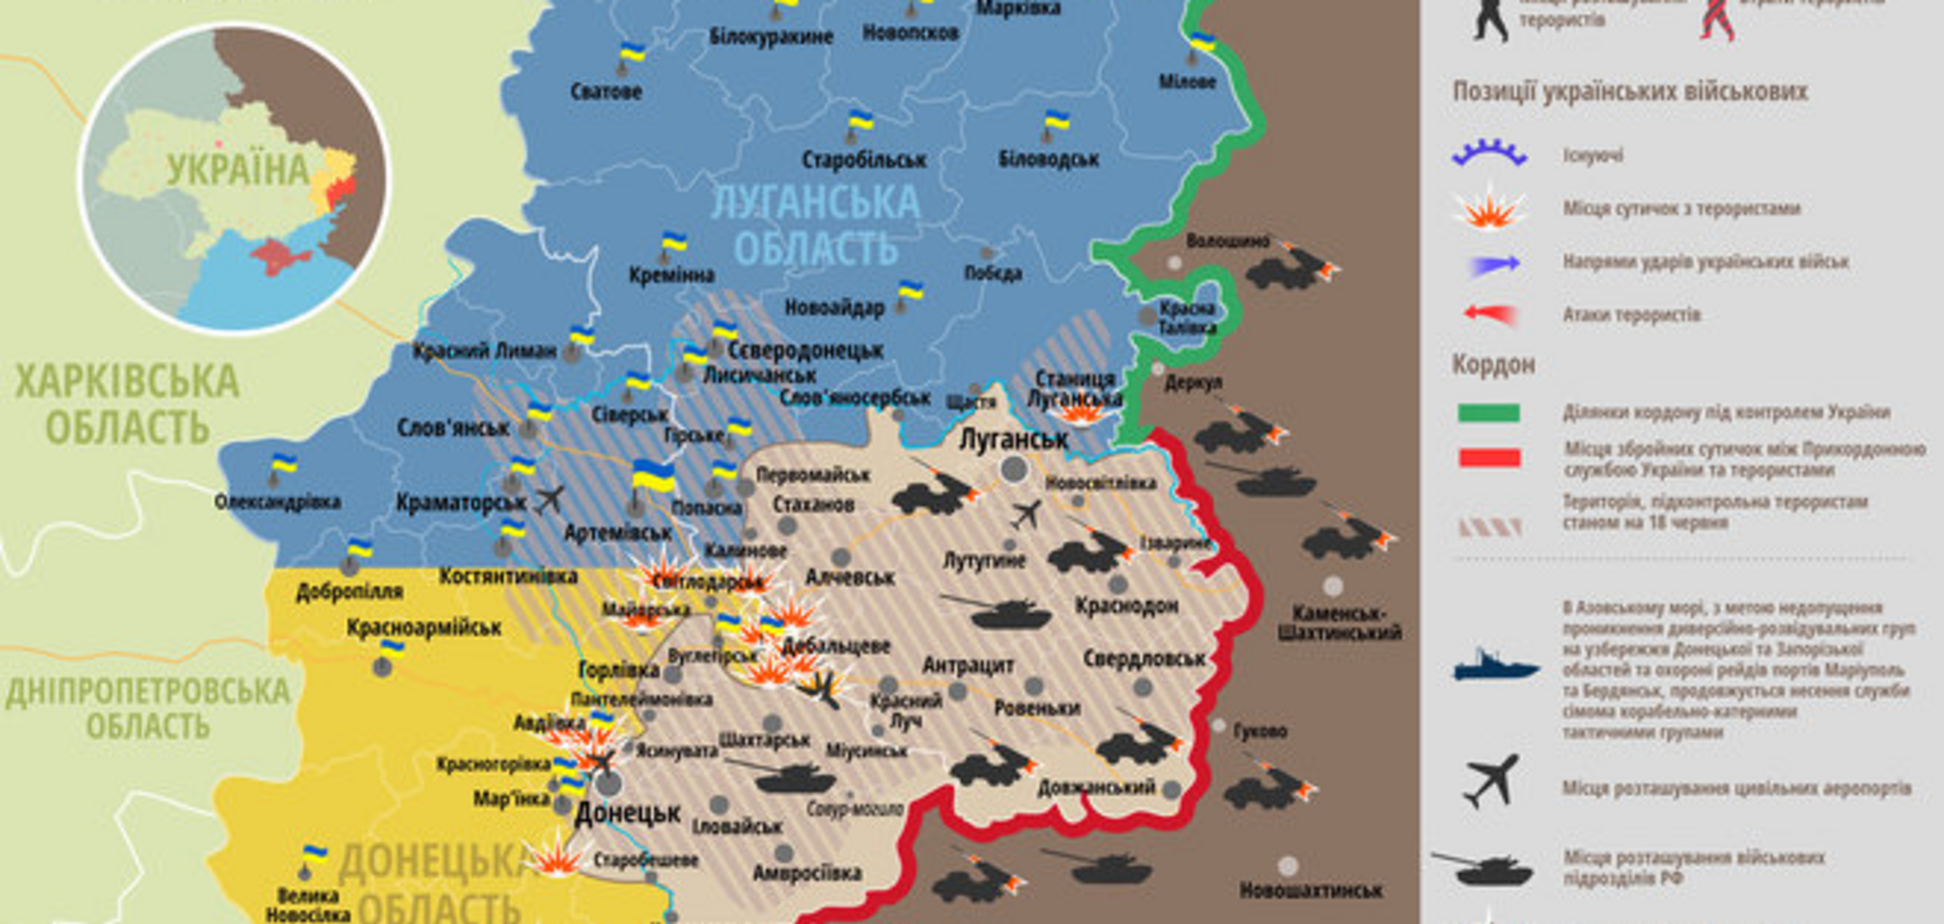 Боевики передислоцировались в районе Дебальцево и донецкого аэропорта: карта АТО